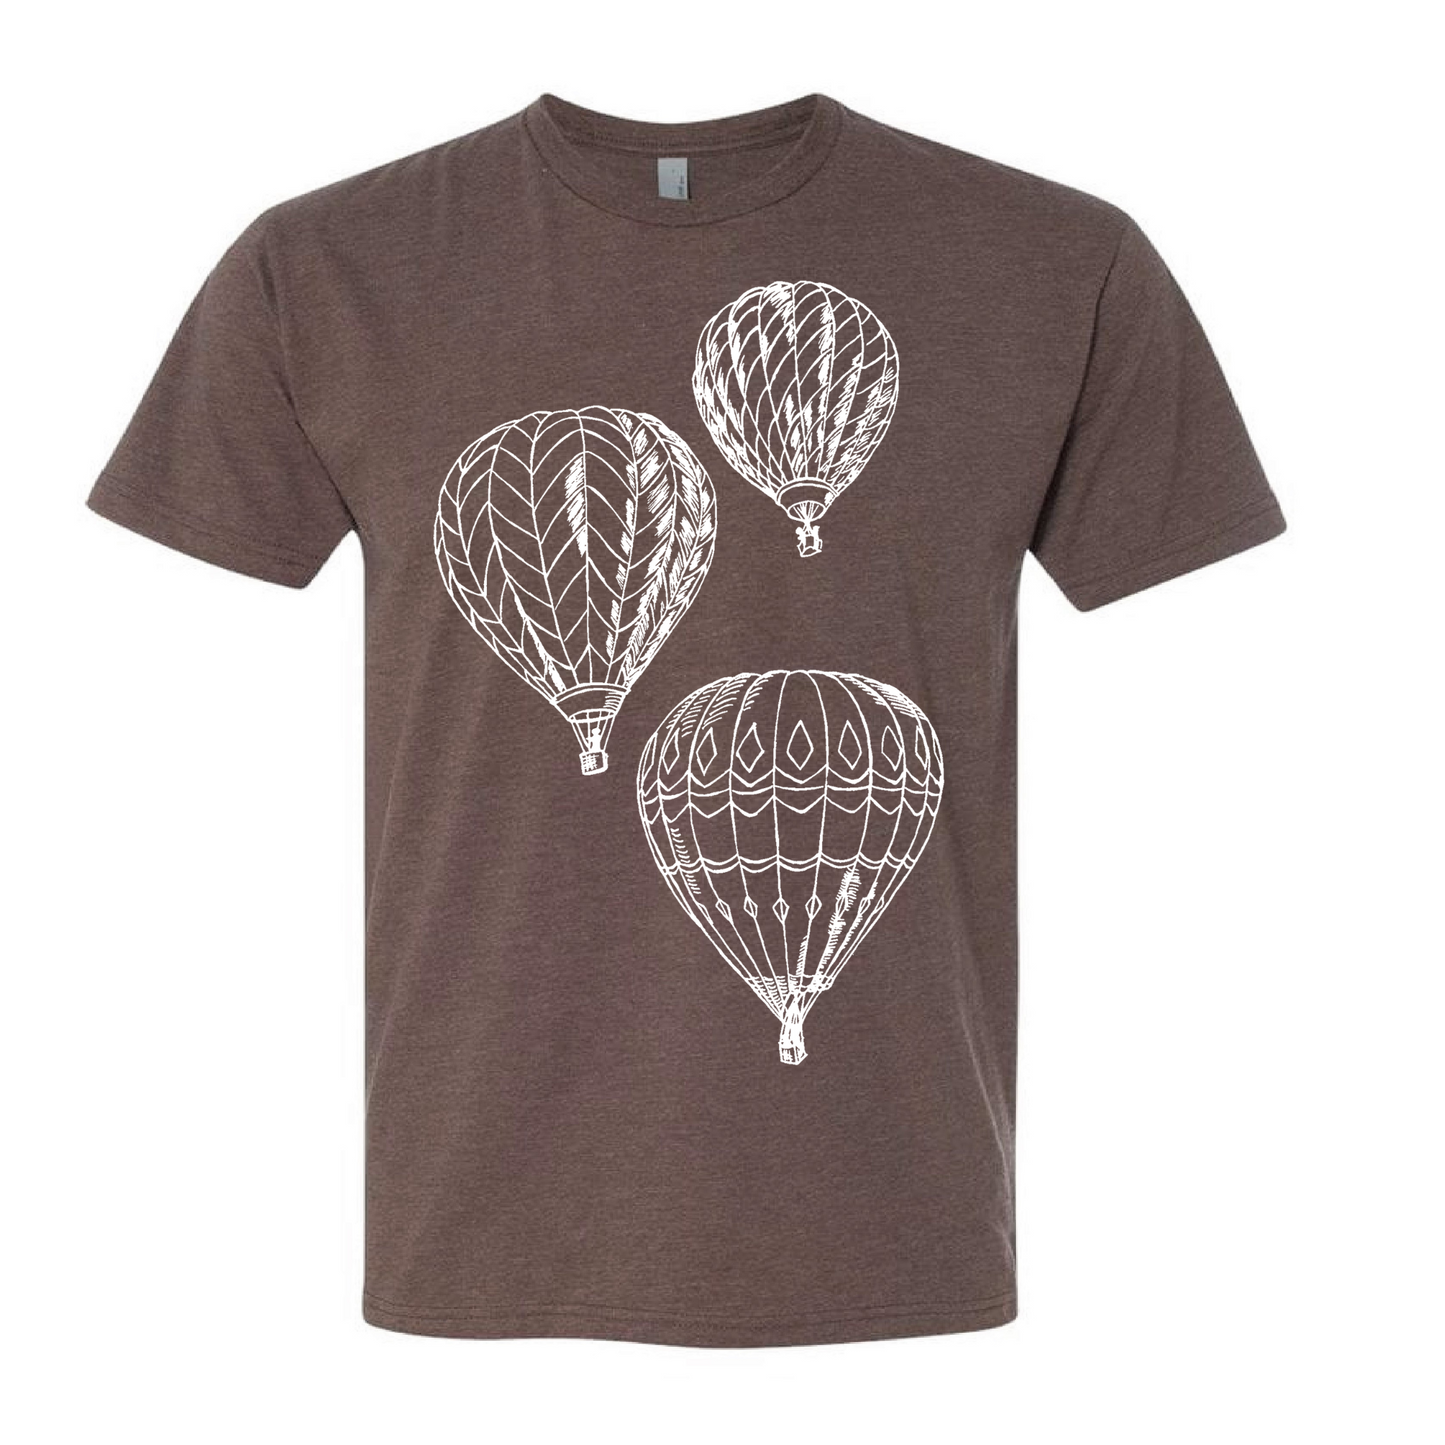 Hot Air Balloons Unisex T Shirt